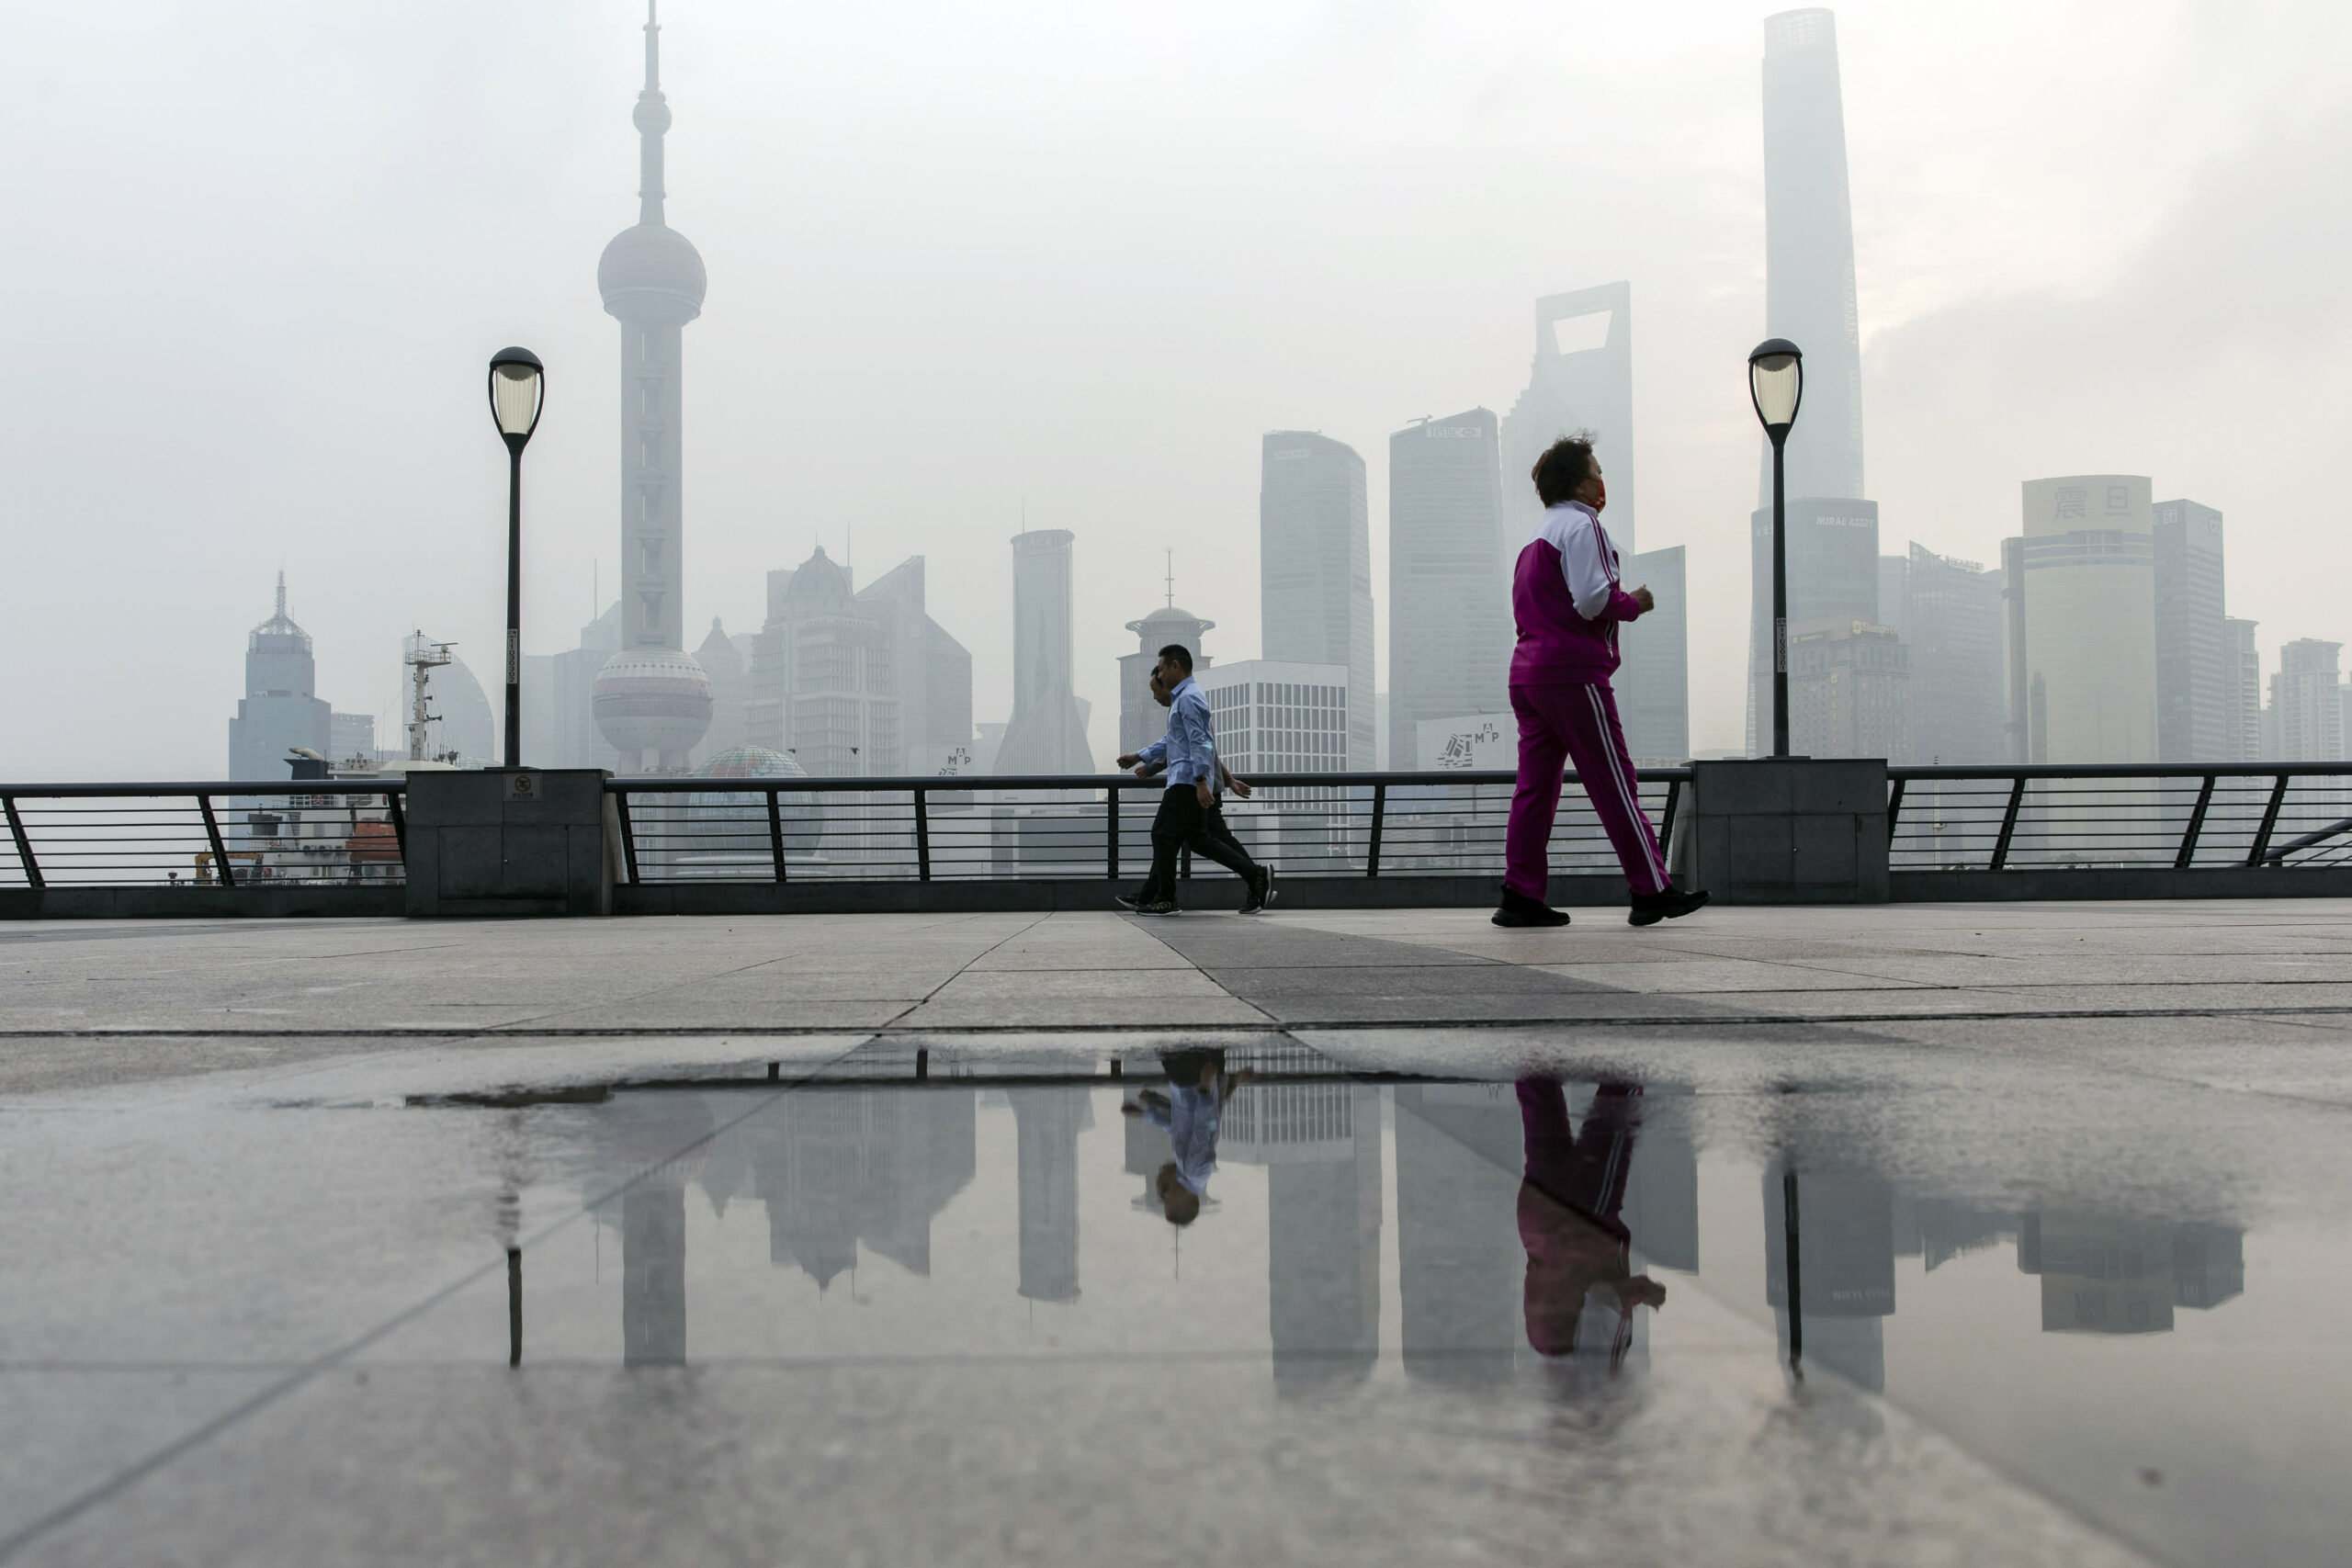 Kinas ekonomi ser ut att återhämta sig 2023, men mycket beror på en variabel, säger KraneShares